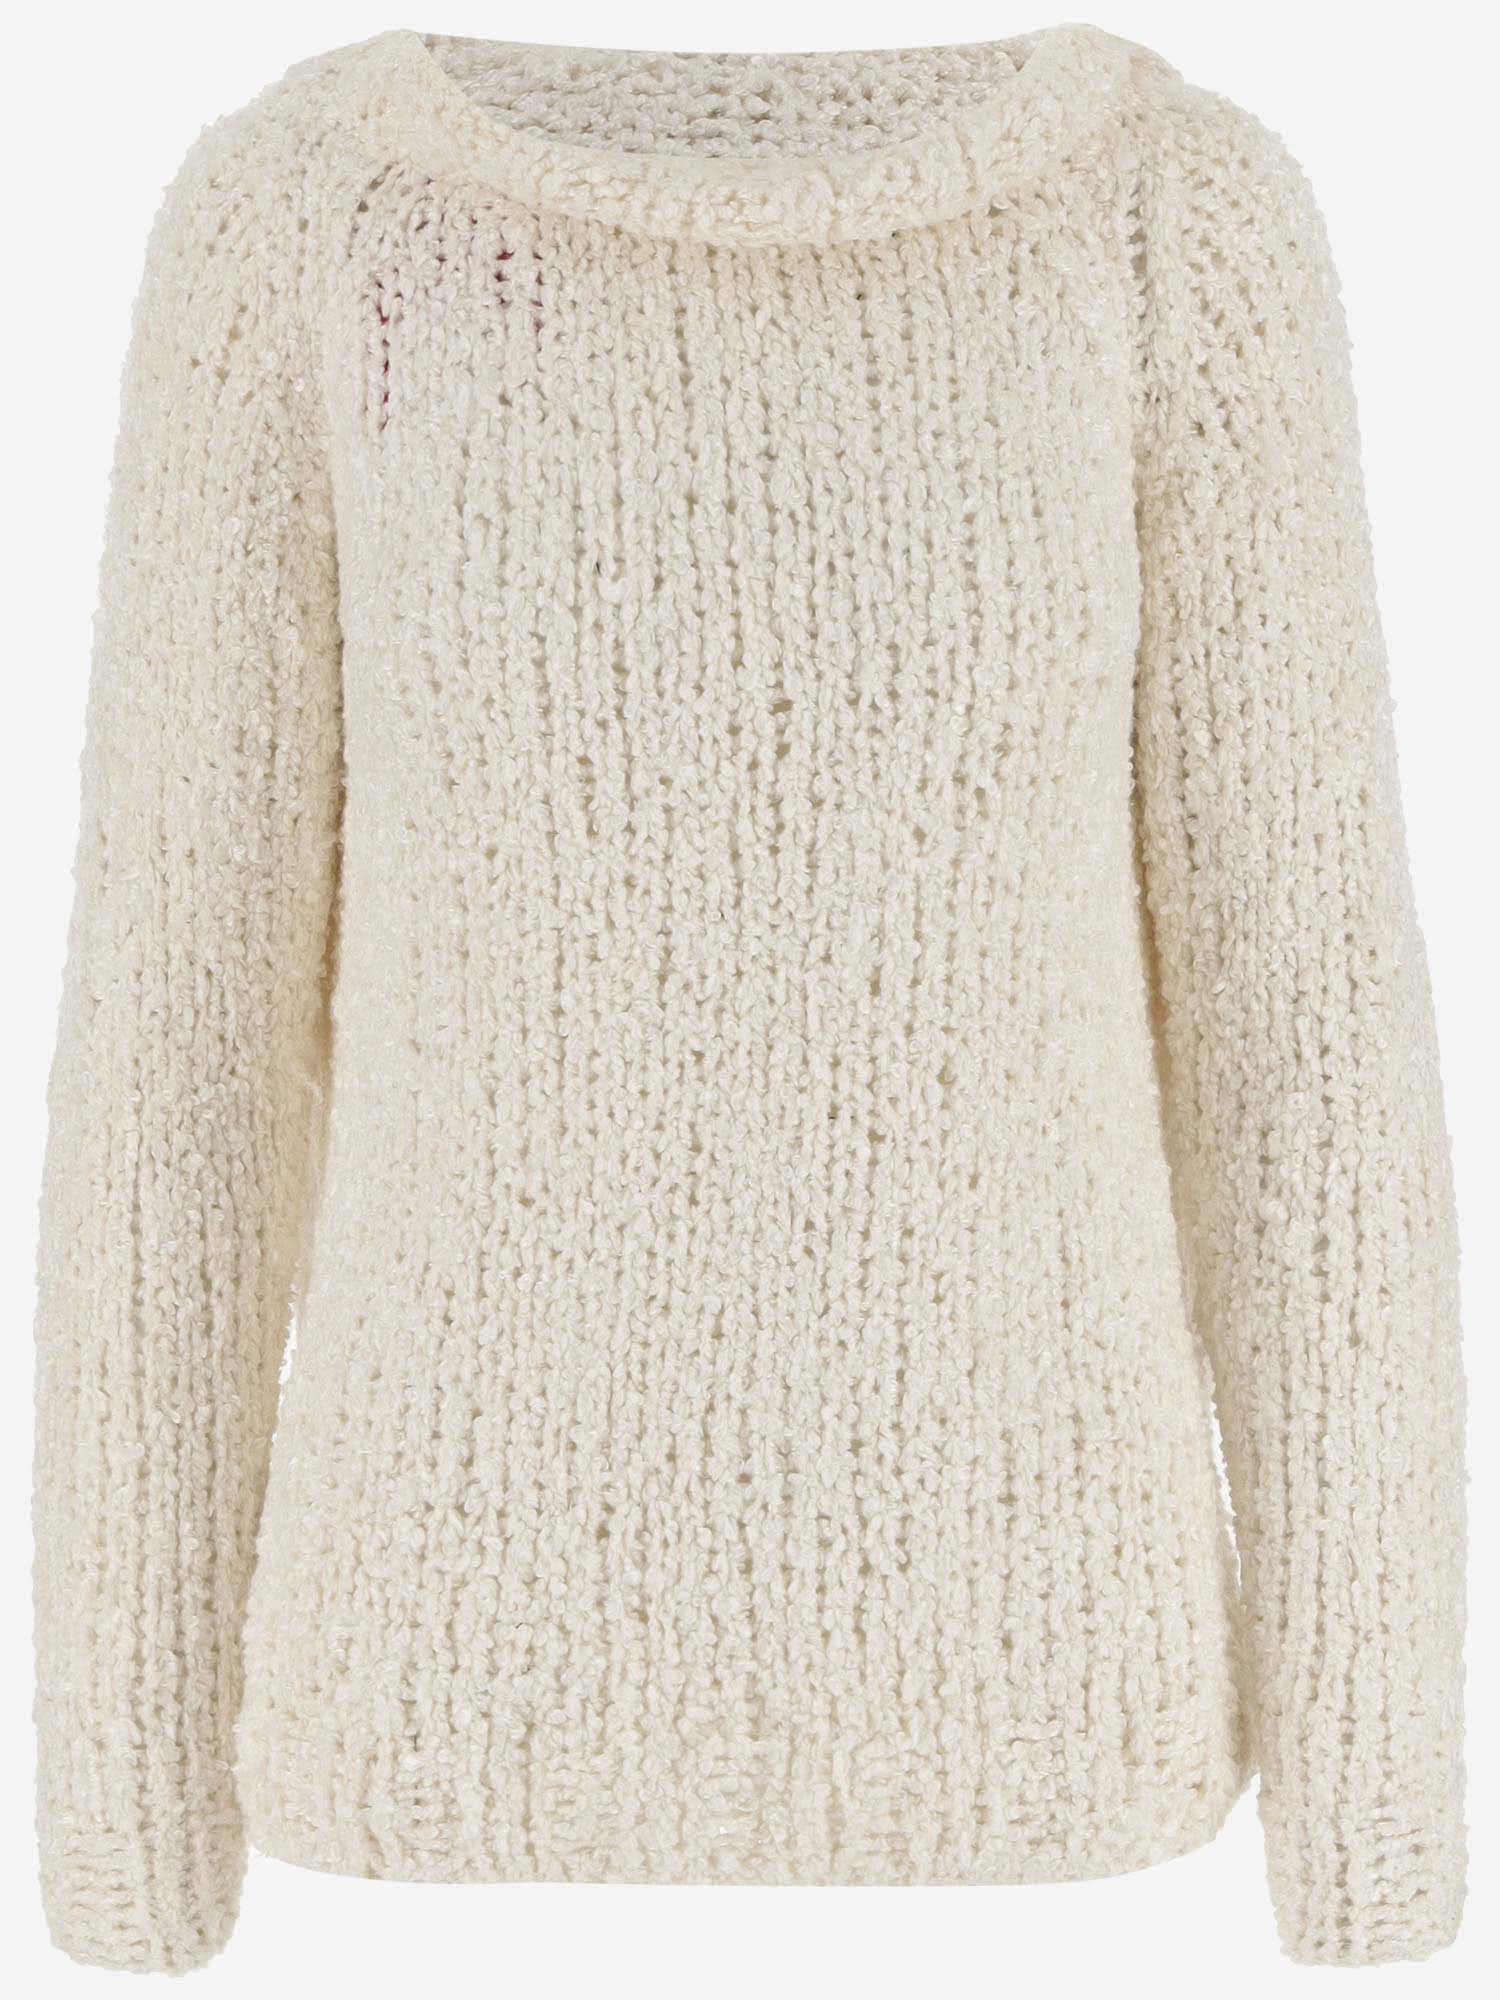 Wild Cashmere Silk Sweater In Ivory